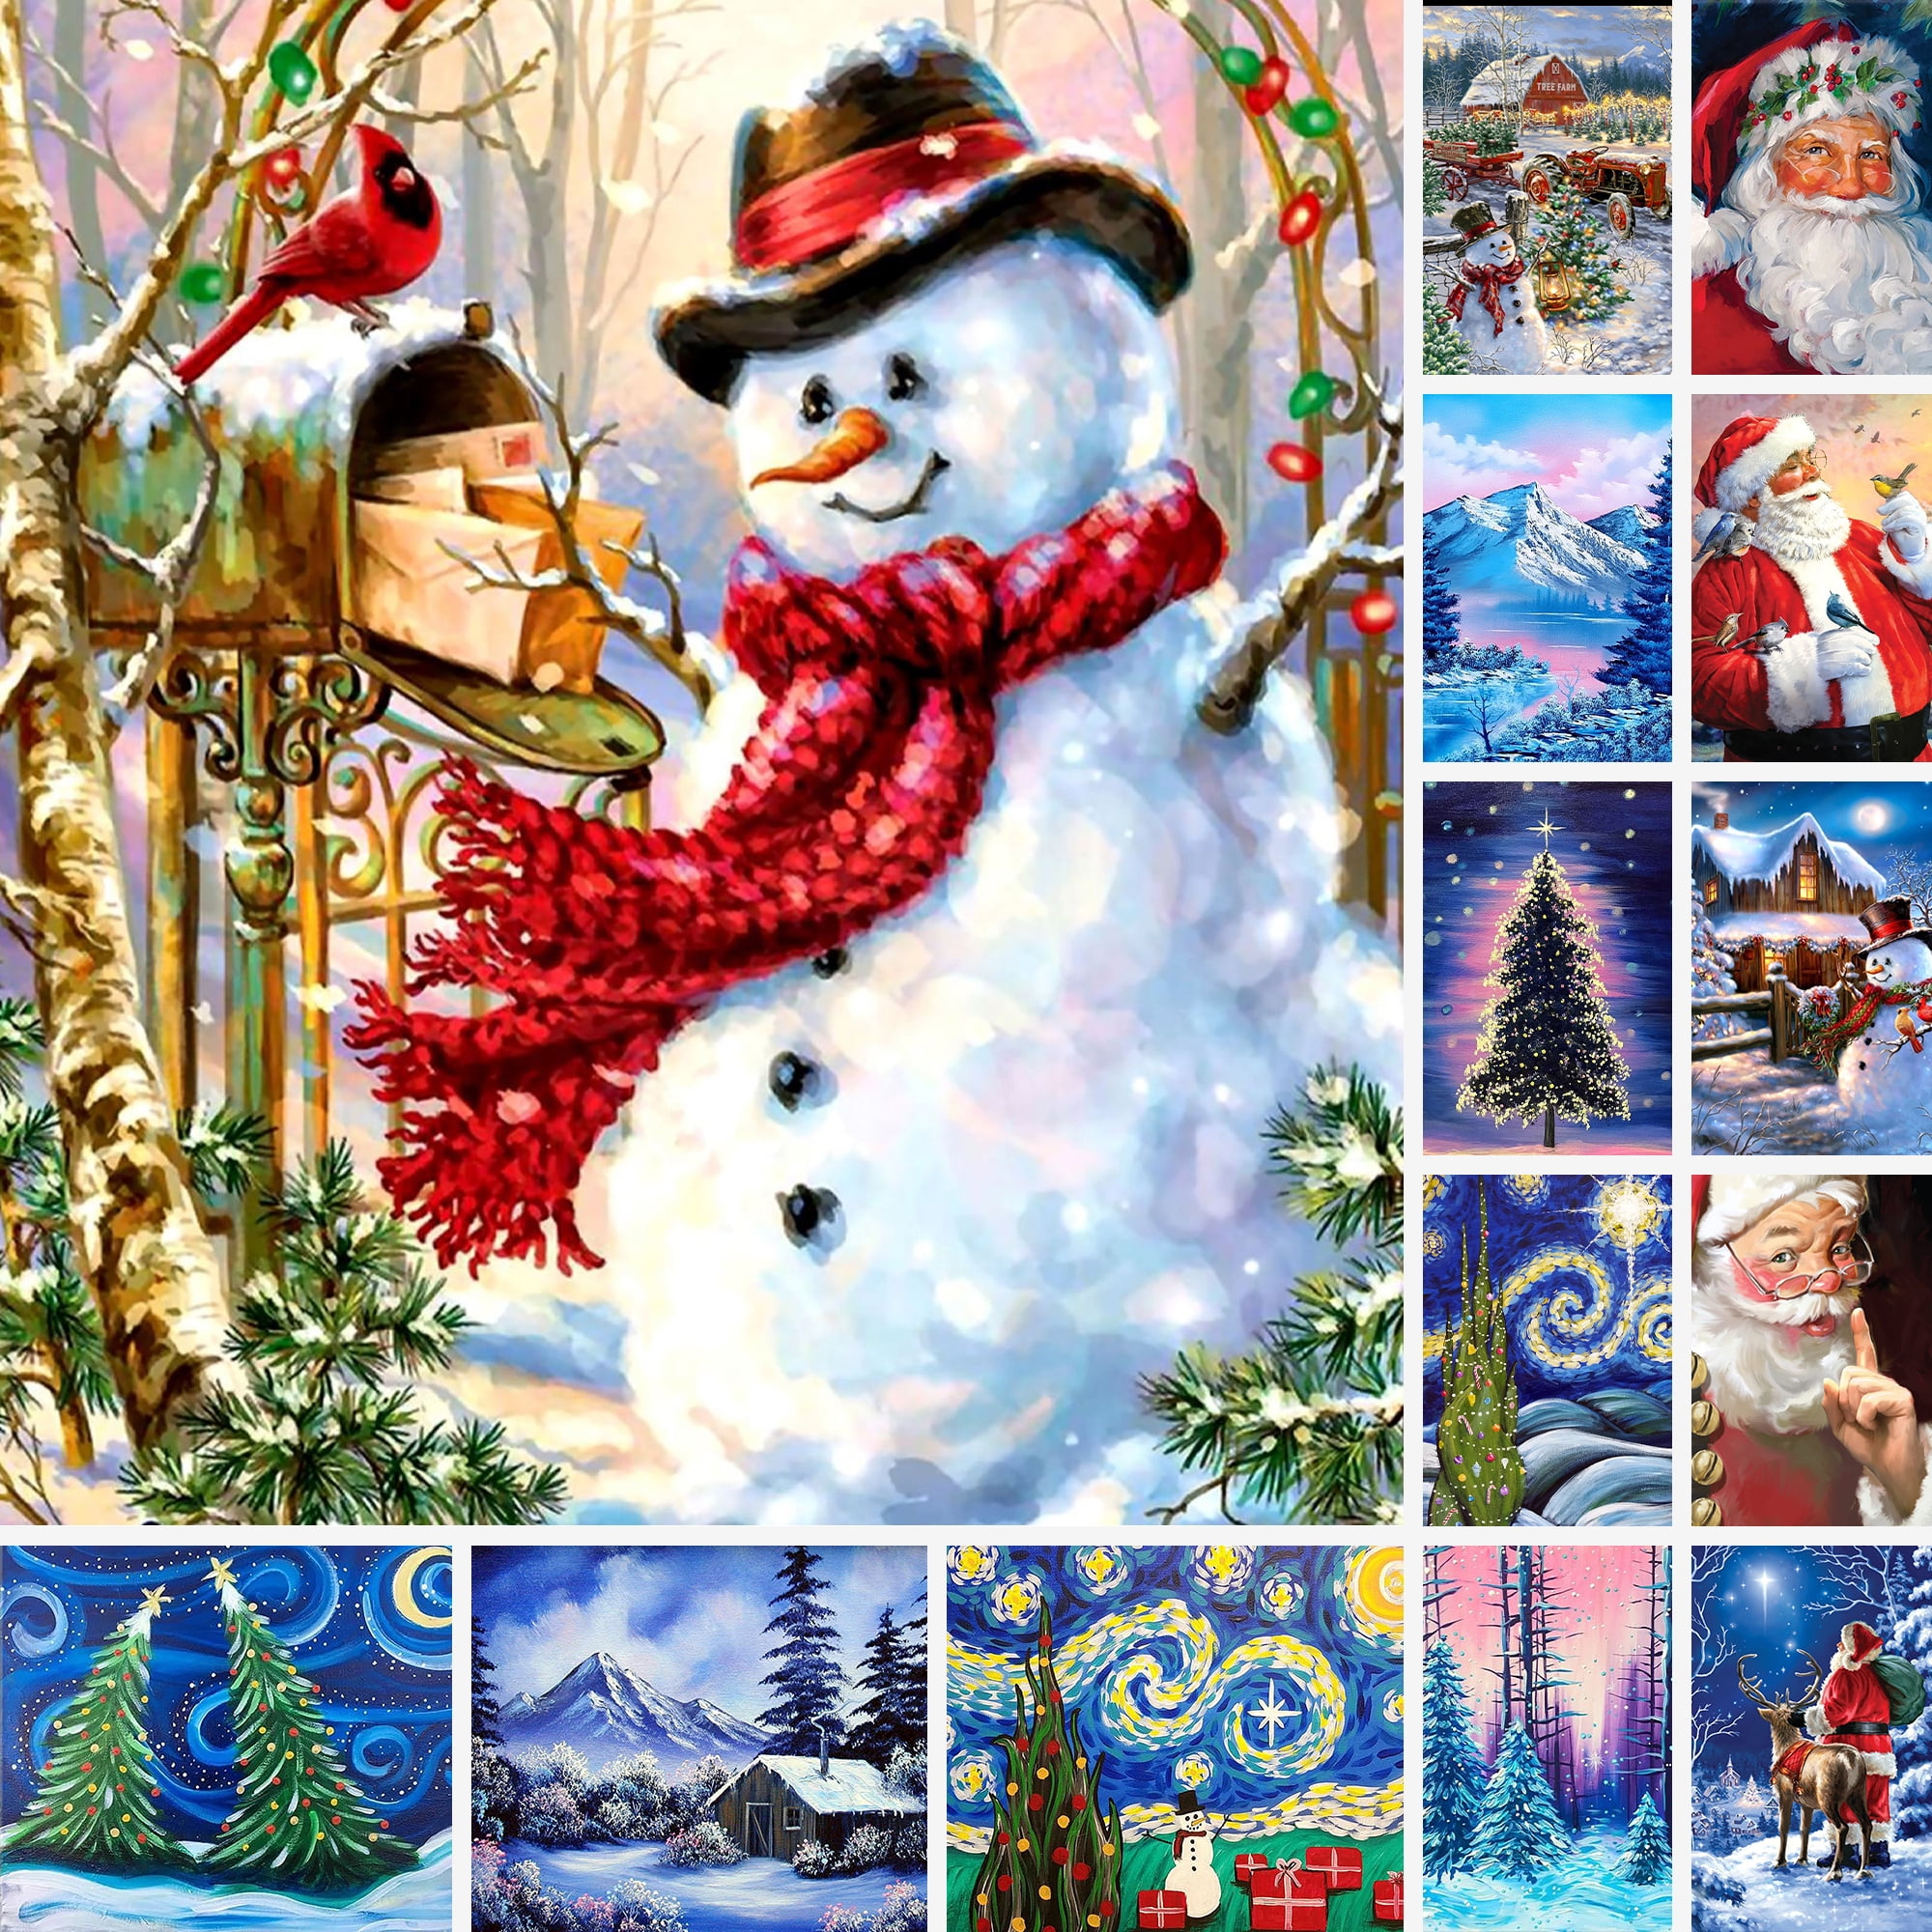 Christmas Snowman AceList Diamond Painting Christmas 5D DIY Diamond Painting Kits Full Drill for Adult